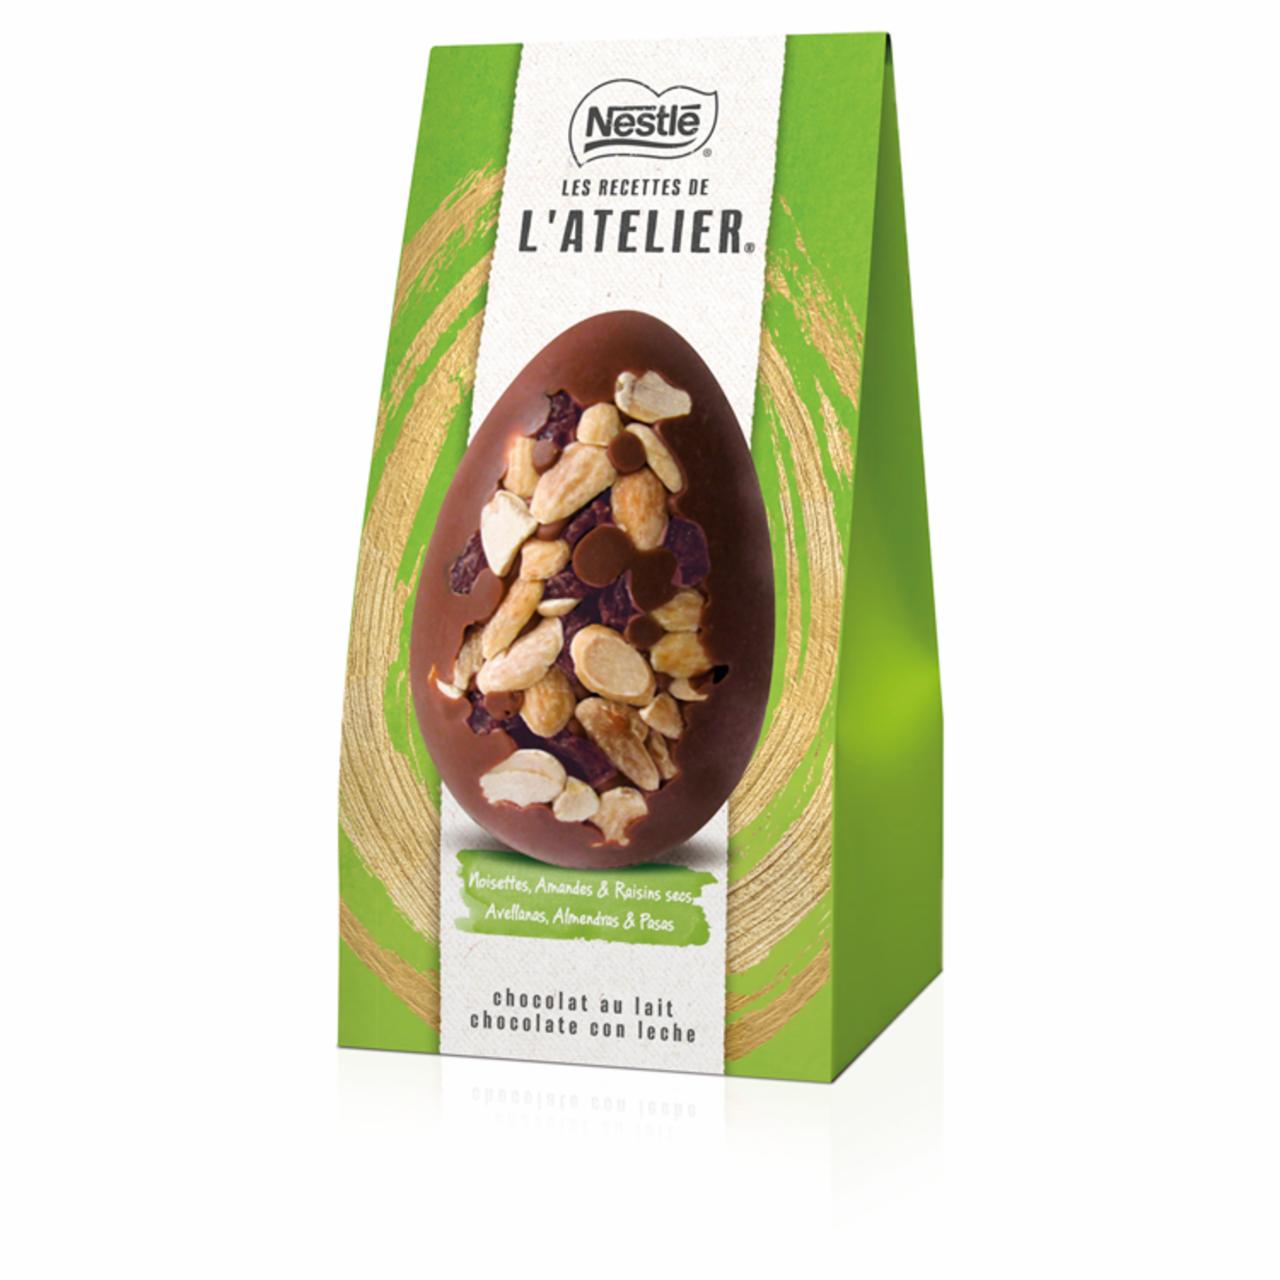 Képek - Nestlé L'Atelier tejcsokoládé tojás mogyoró, mandula és mazsola keverékkel 100 g